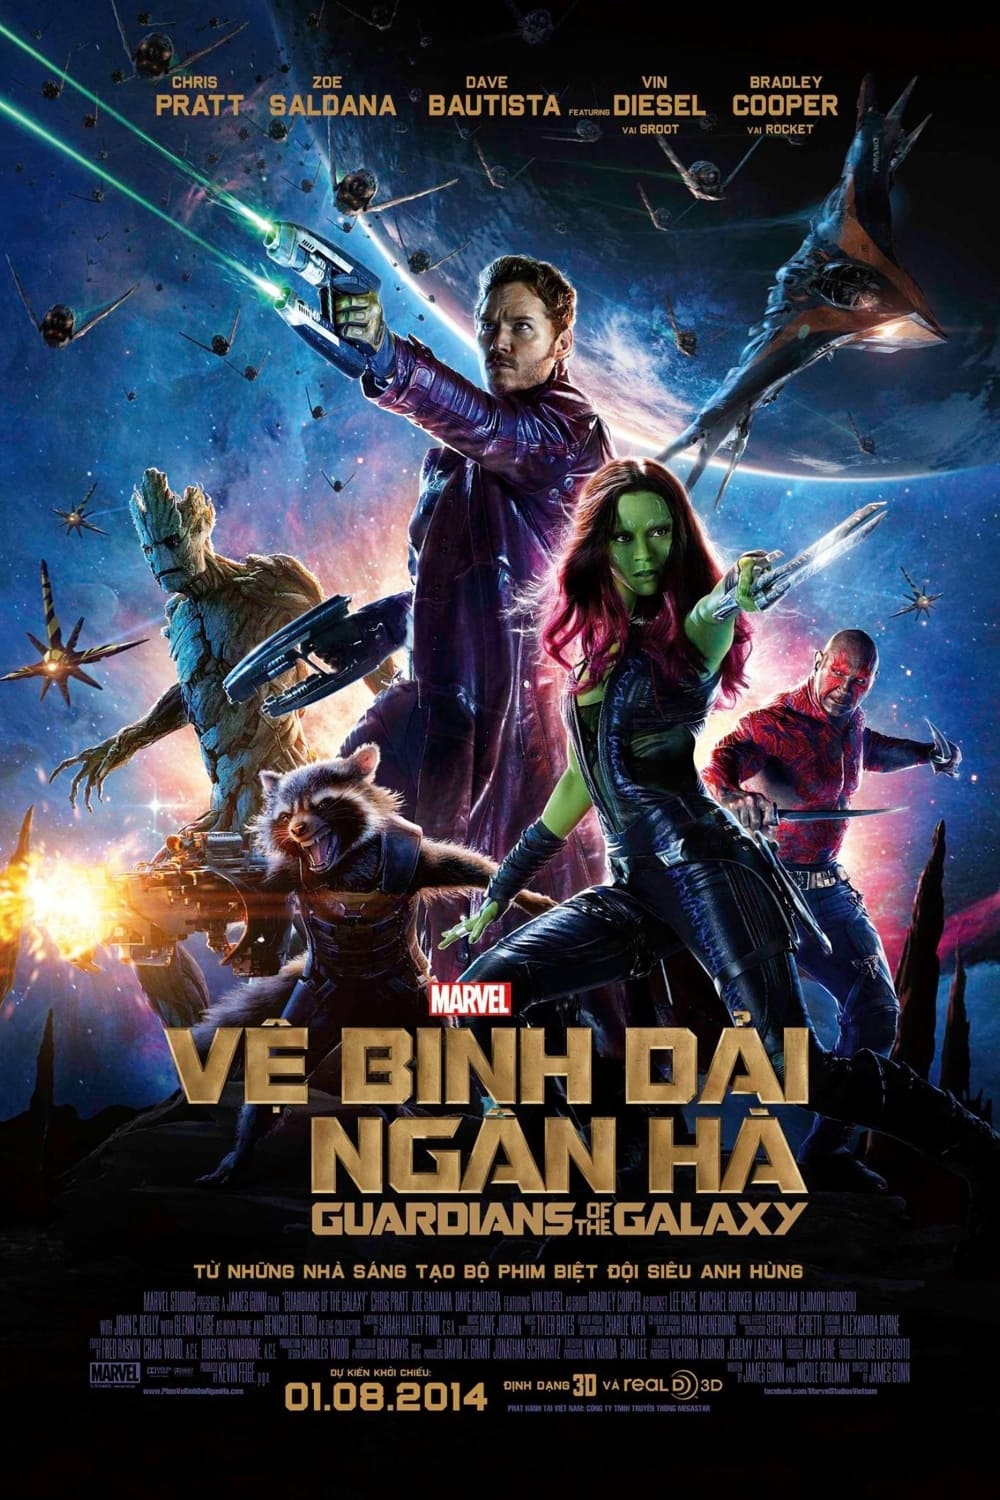 Vệ Binh Dải Ngân Hà (Guardians of the Galaxy) [2014]